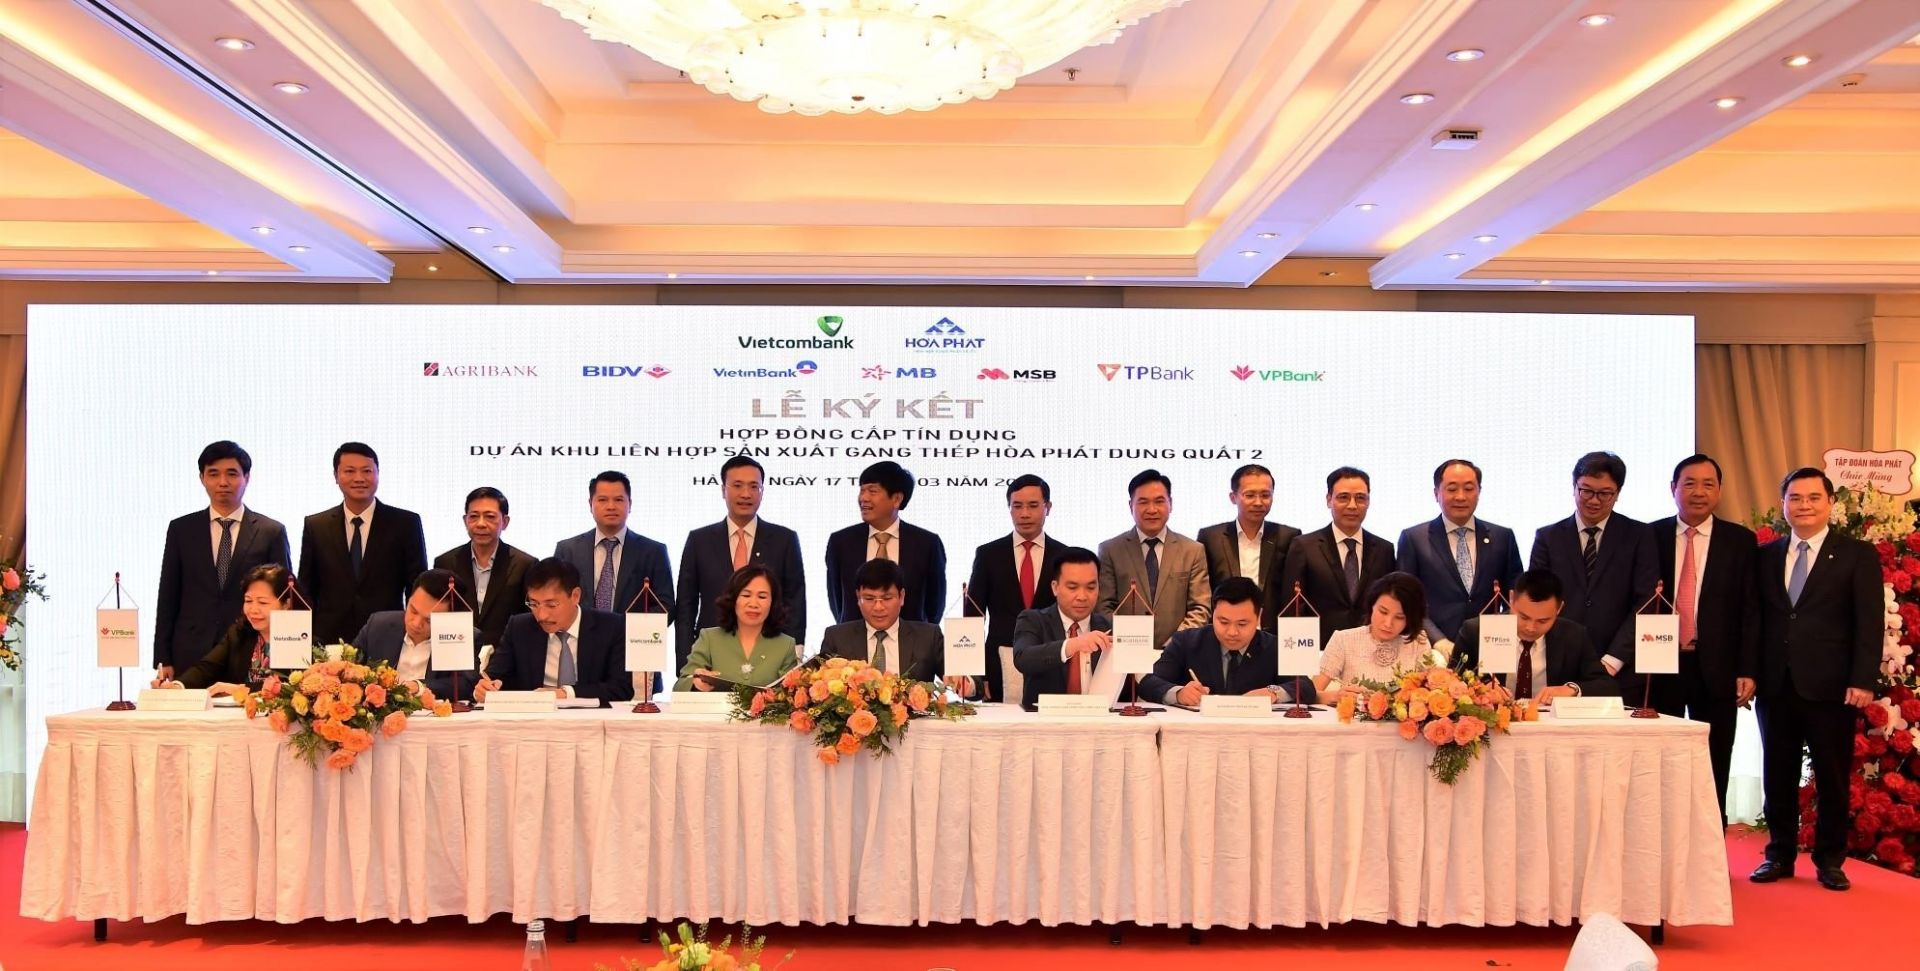 Lễ ký kết hợp đồng tín dụng giữa Công ty CP Thép Hòa Phát Dung Quất và 8 ngân hàng lớn của Việt Nam thực hiện dự án Khu liên hợp sản xuất gang thép Hòa Phát Dung Quất 2 (Dung Quất 2)